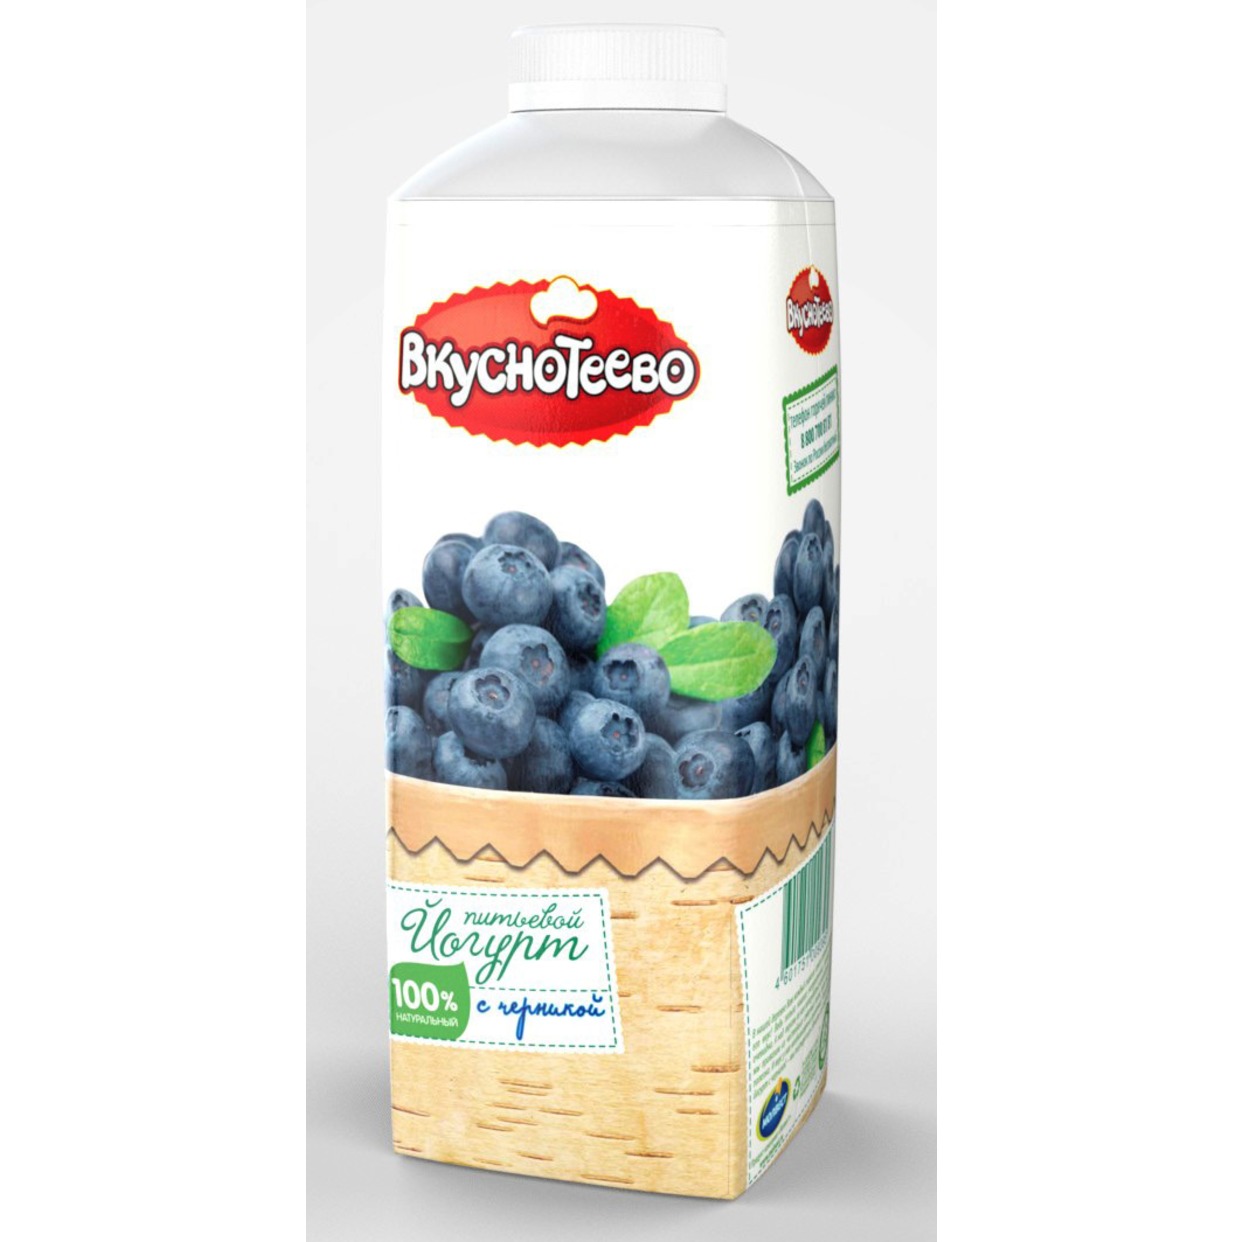 Йогурт Вкуснотеево питьевой с черникой 1,5% 750г по акции в Пятерочке